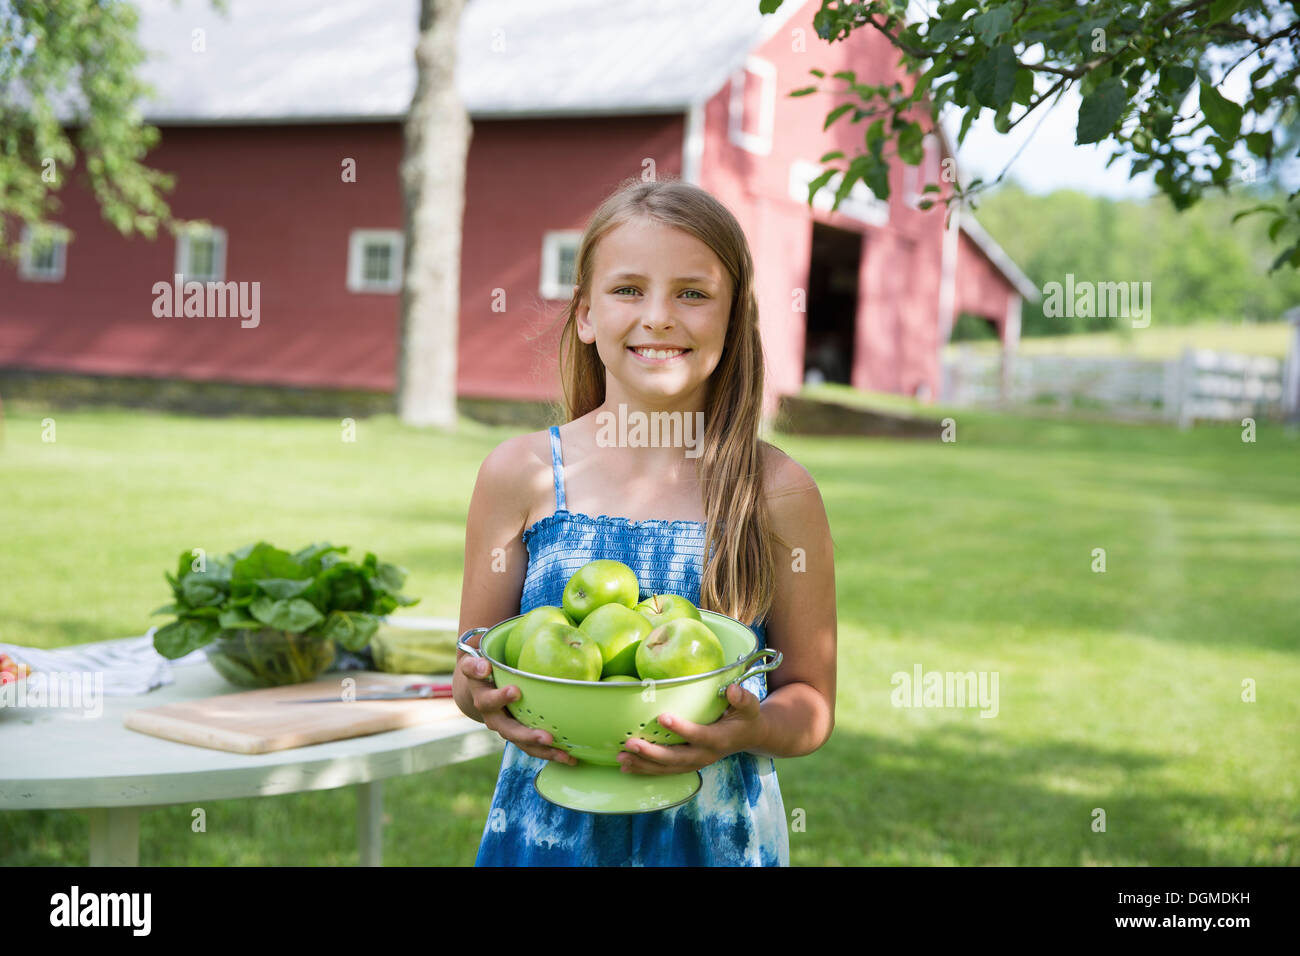 Partie de la famille. Une jeune fille aux longs cheveux blonds portant une robe d'été bleu, portant un grand bol de pommes à peau verte croquante. Banque D'Images